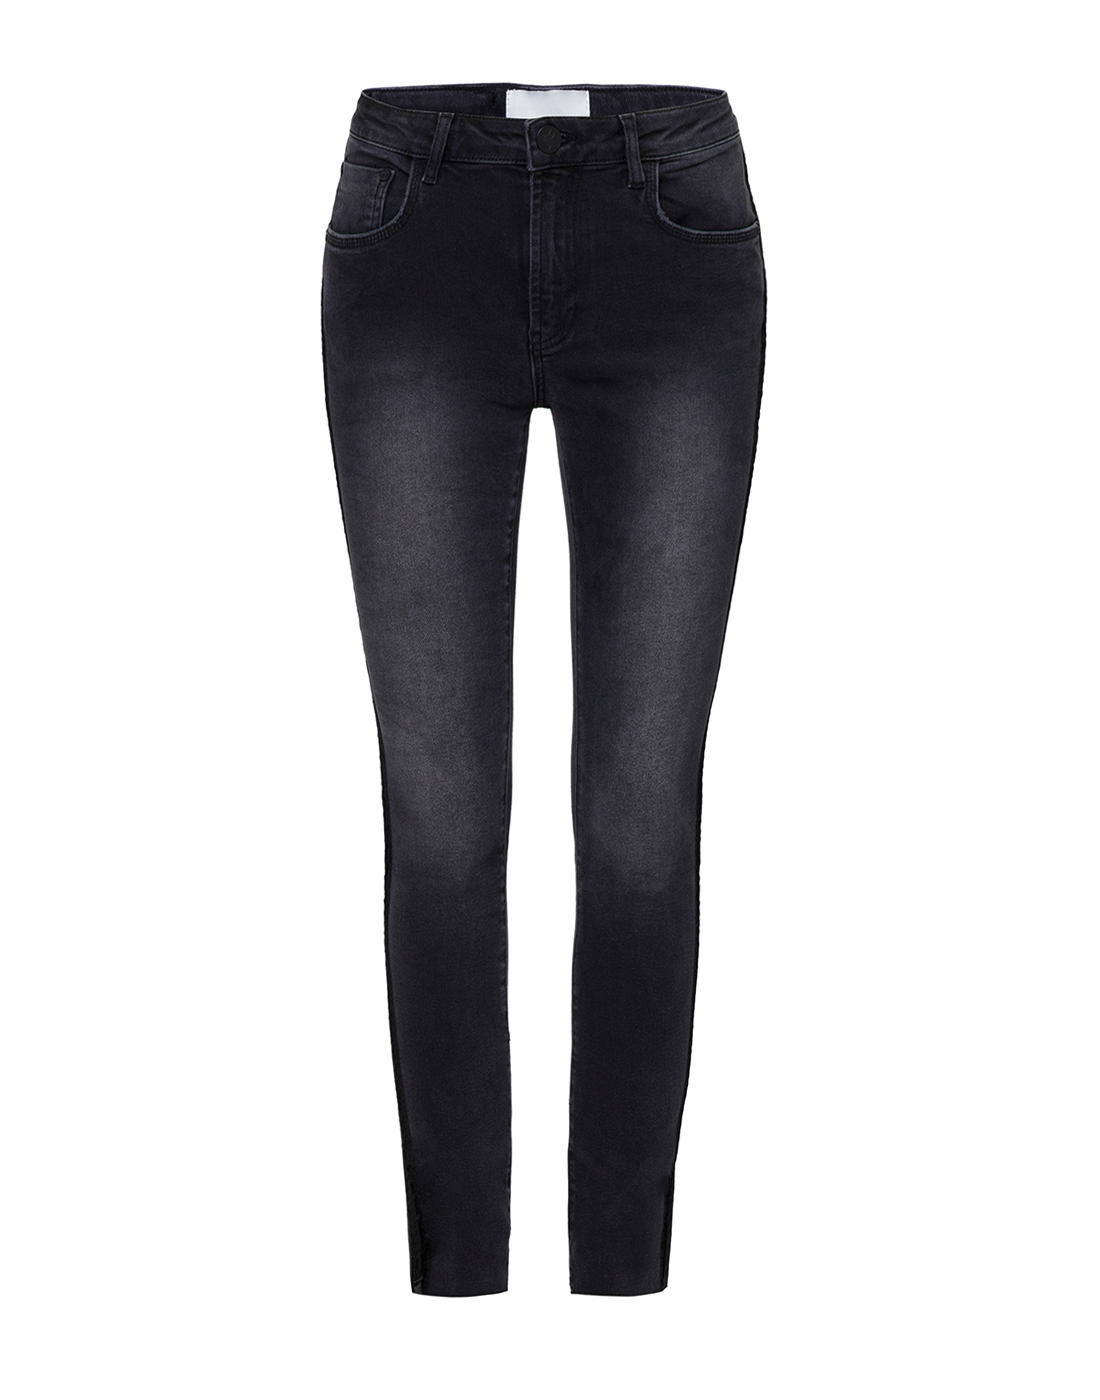 Женские темно-серые джинсы Oneteaspoon S22759-1